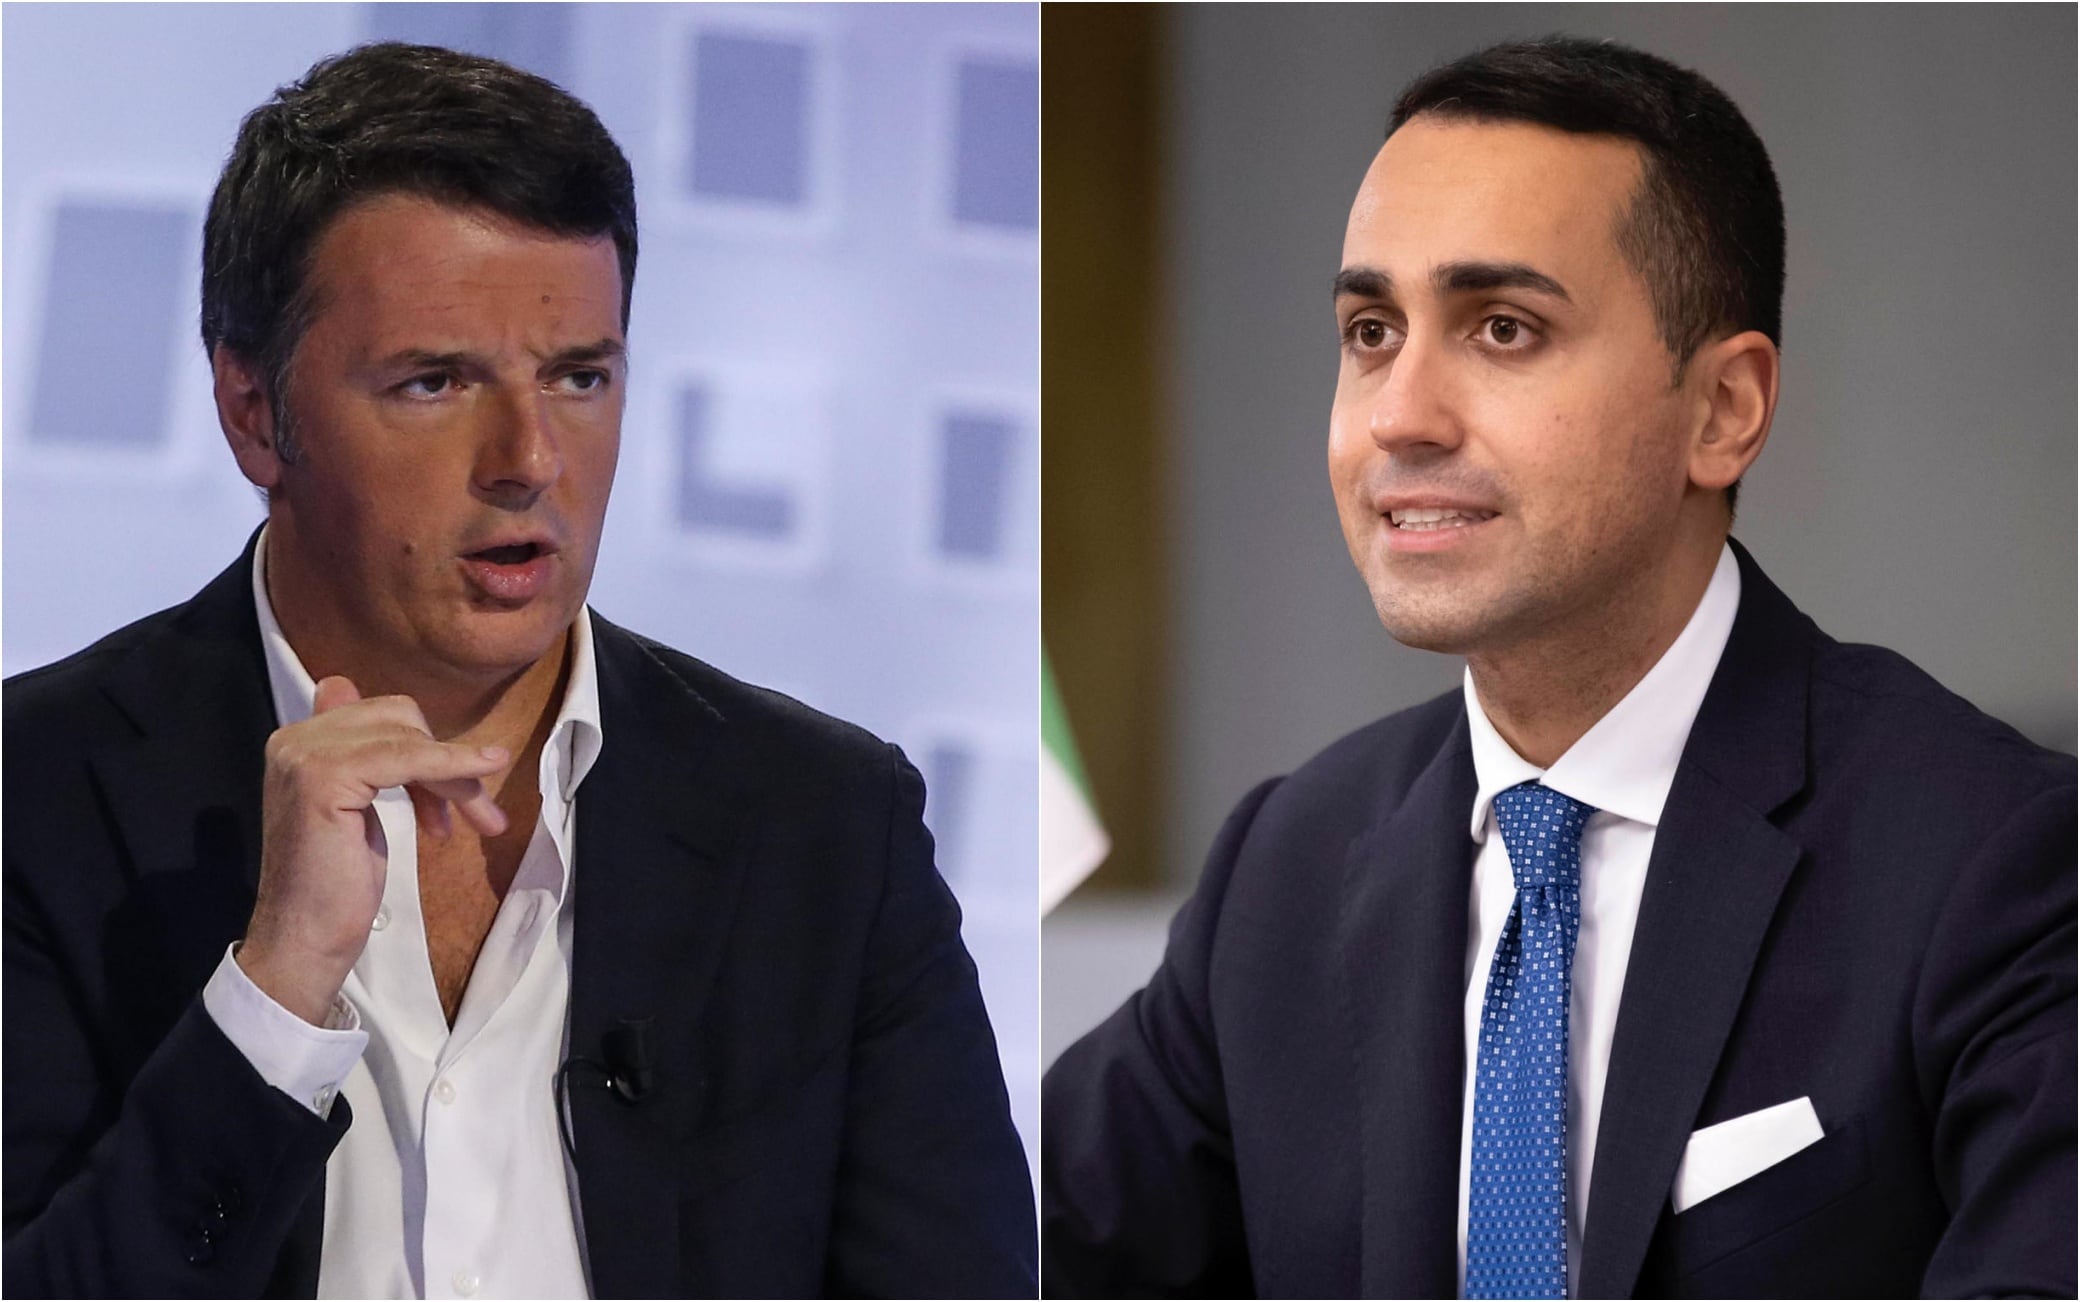 Luigi Di Maio attacks Matteo Renzi: “He is already in the center right”